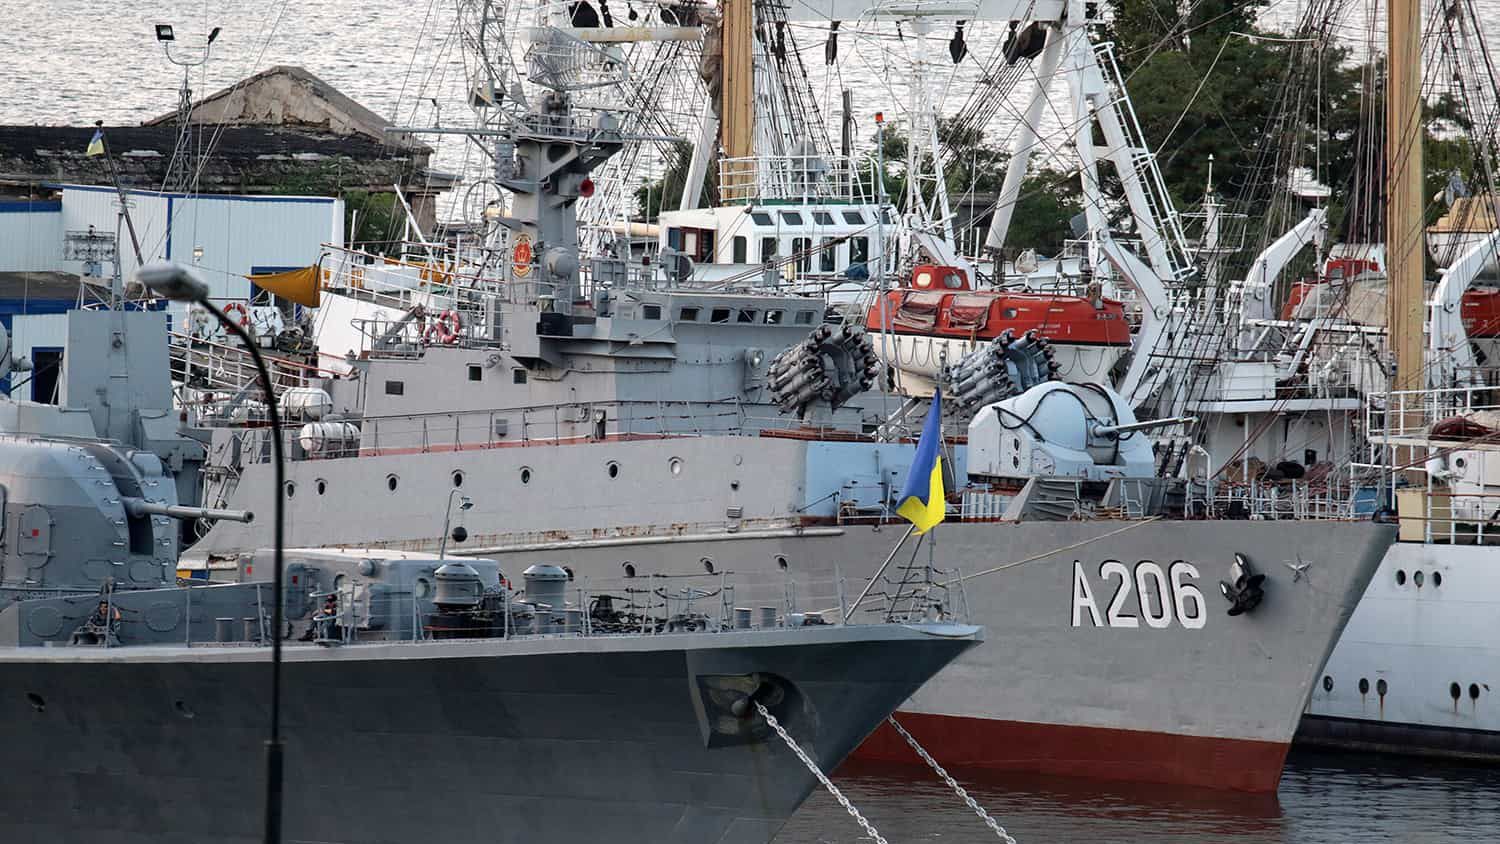 Последний корвет в Украине порежут на металлолом: под удар попал корабль Винница – что известно